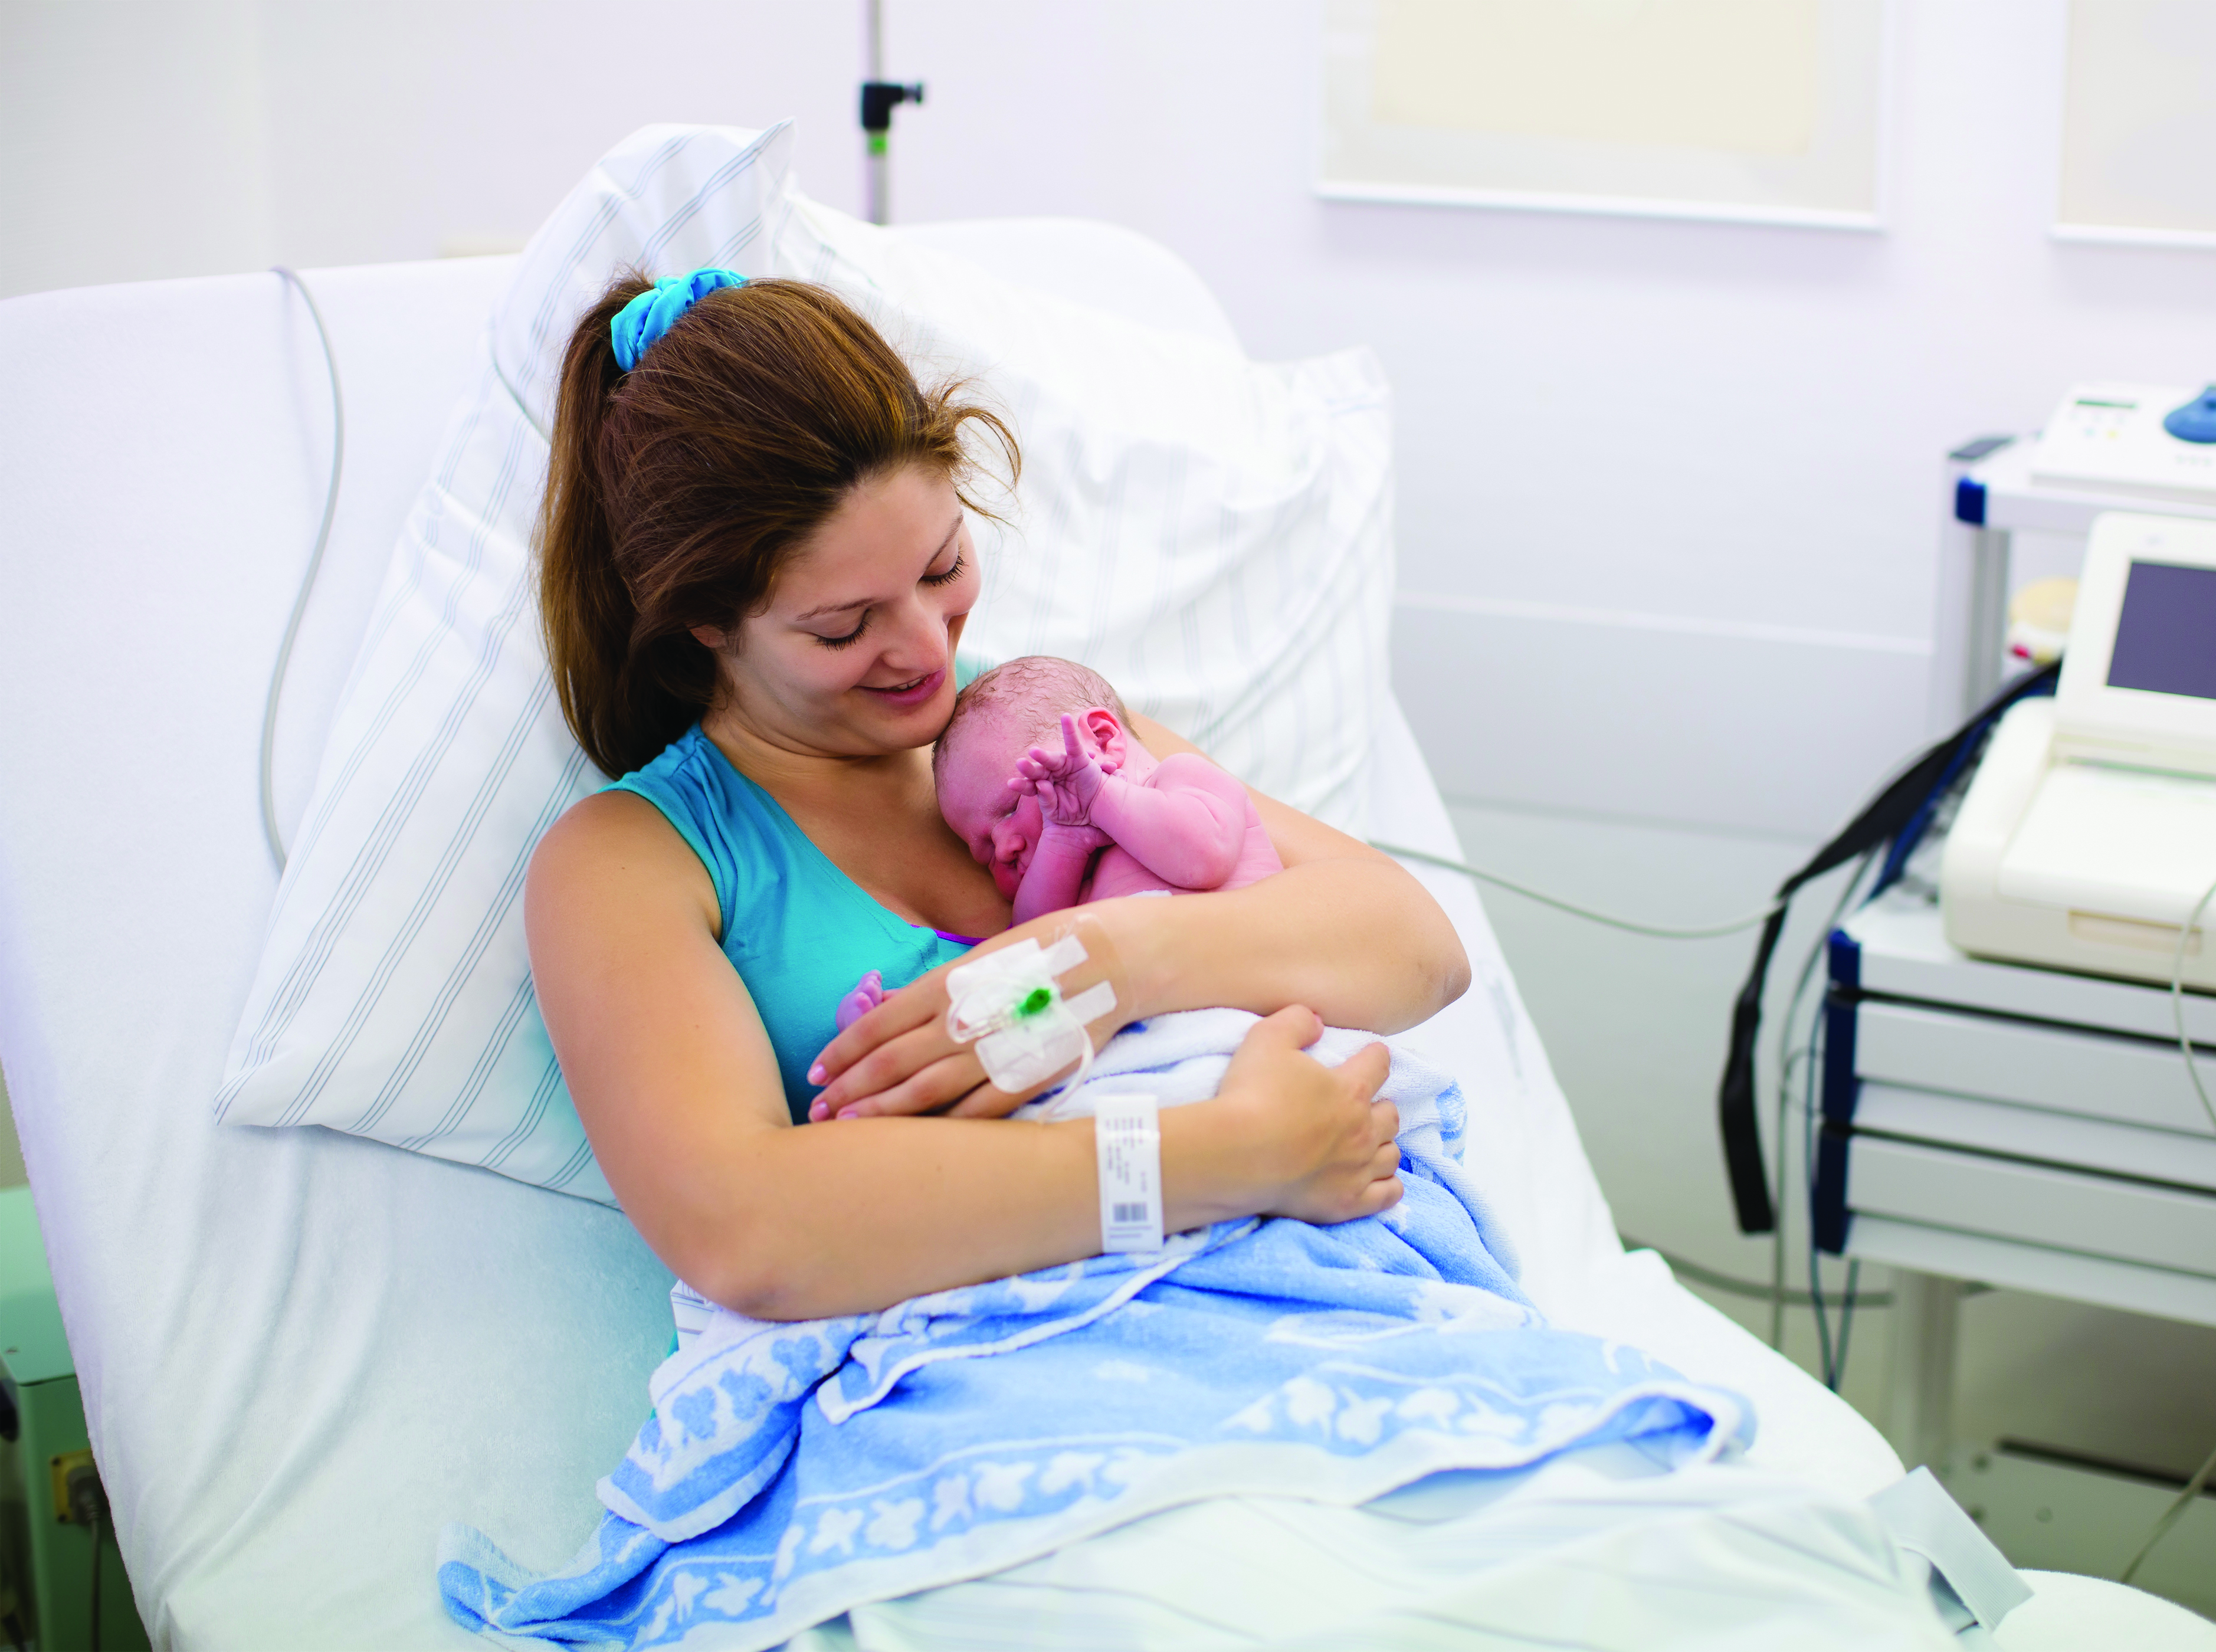 Preventing postpartum newborn falls